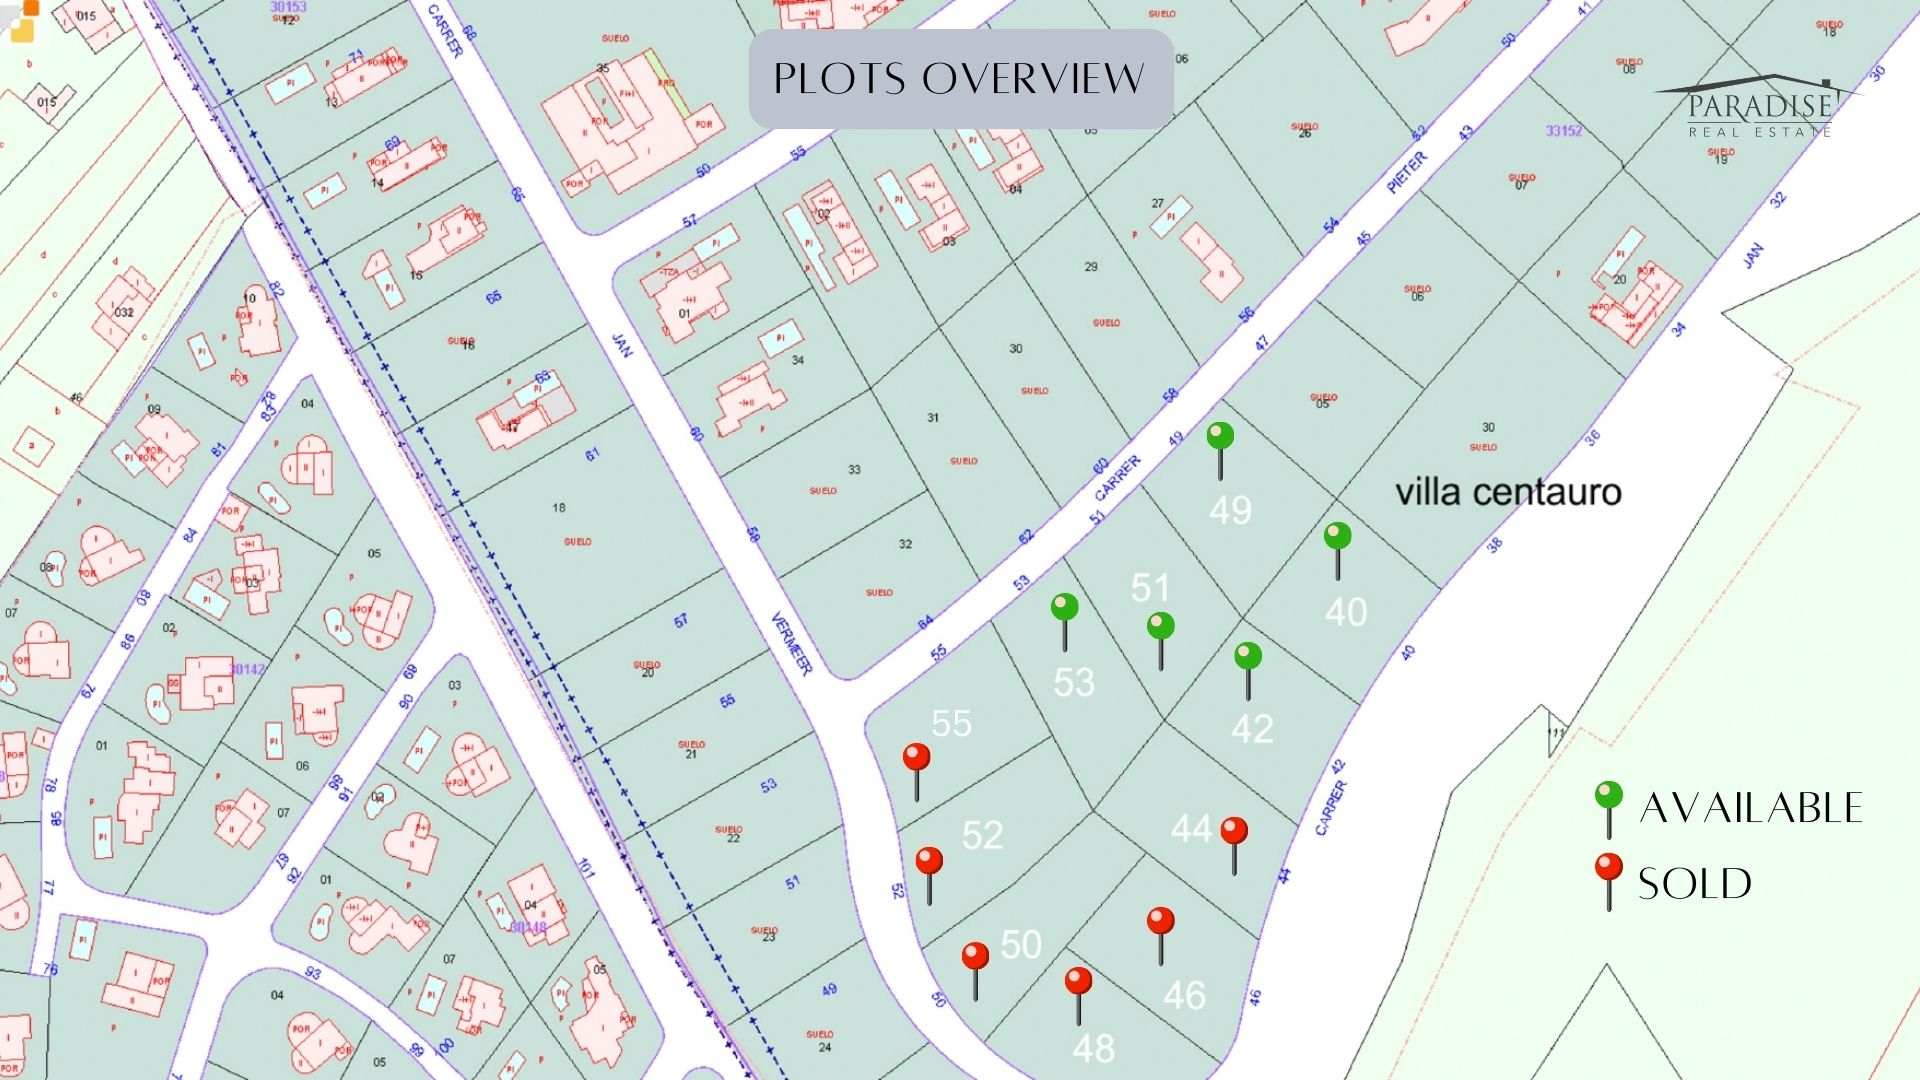 Monte Olimpo Baugrundstücke: Gestalten Sie Ihr Traumhaus und investieren Sie in exklusive Immobilien 0Preise ab €525k - €730